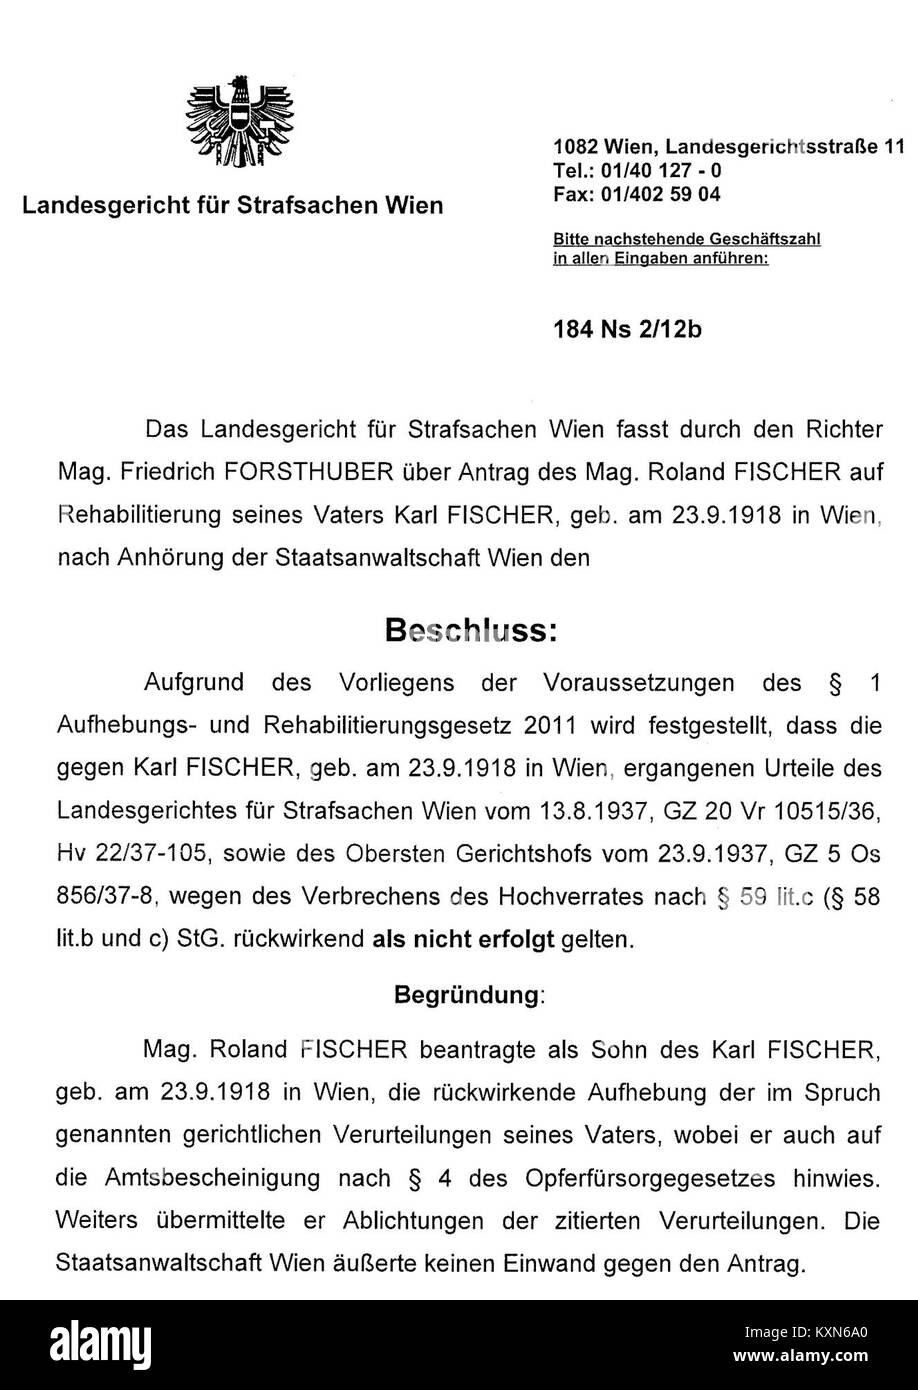 Beschluss Rehabilitierung Karl Fischer Österreich Foto Stock